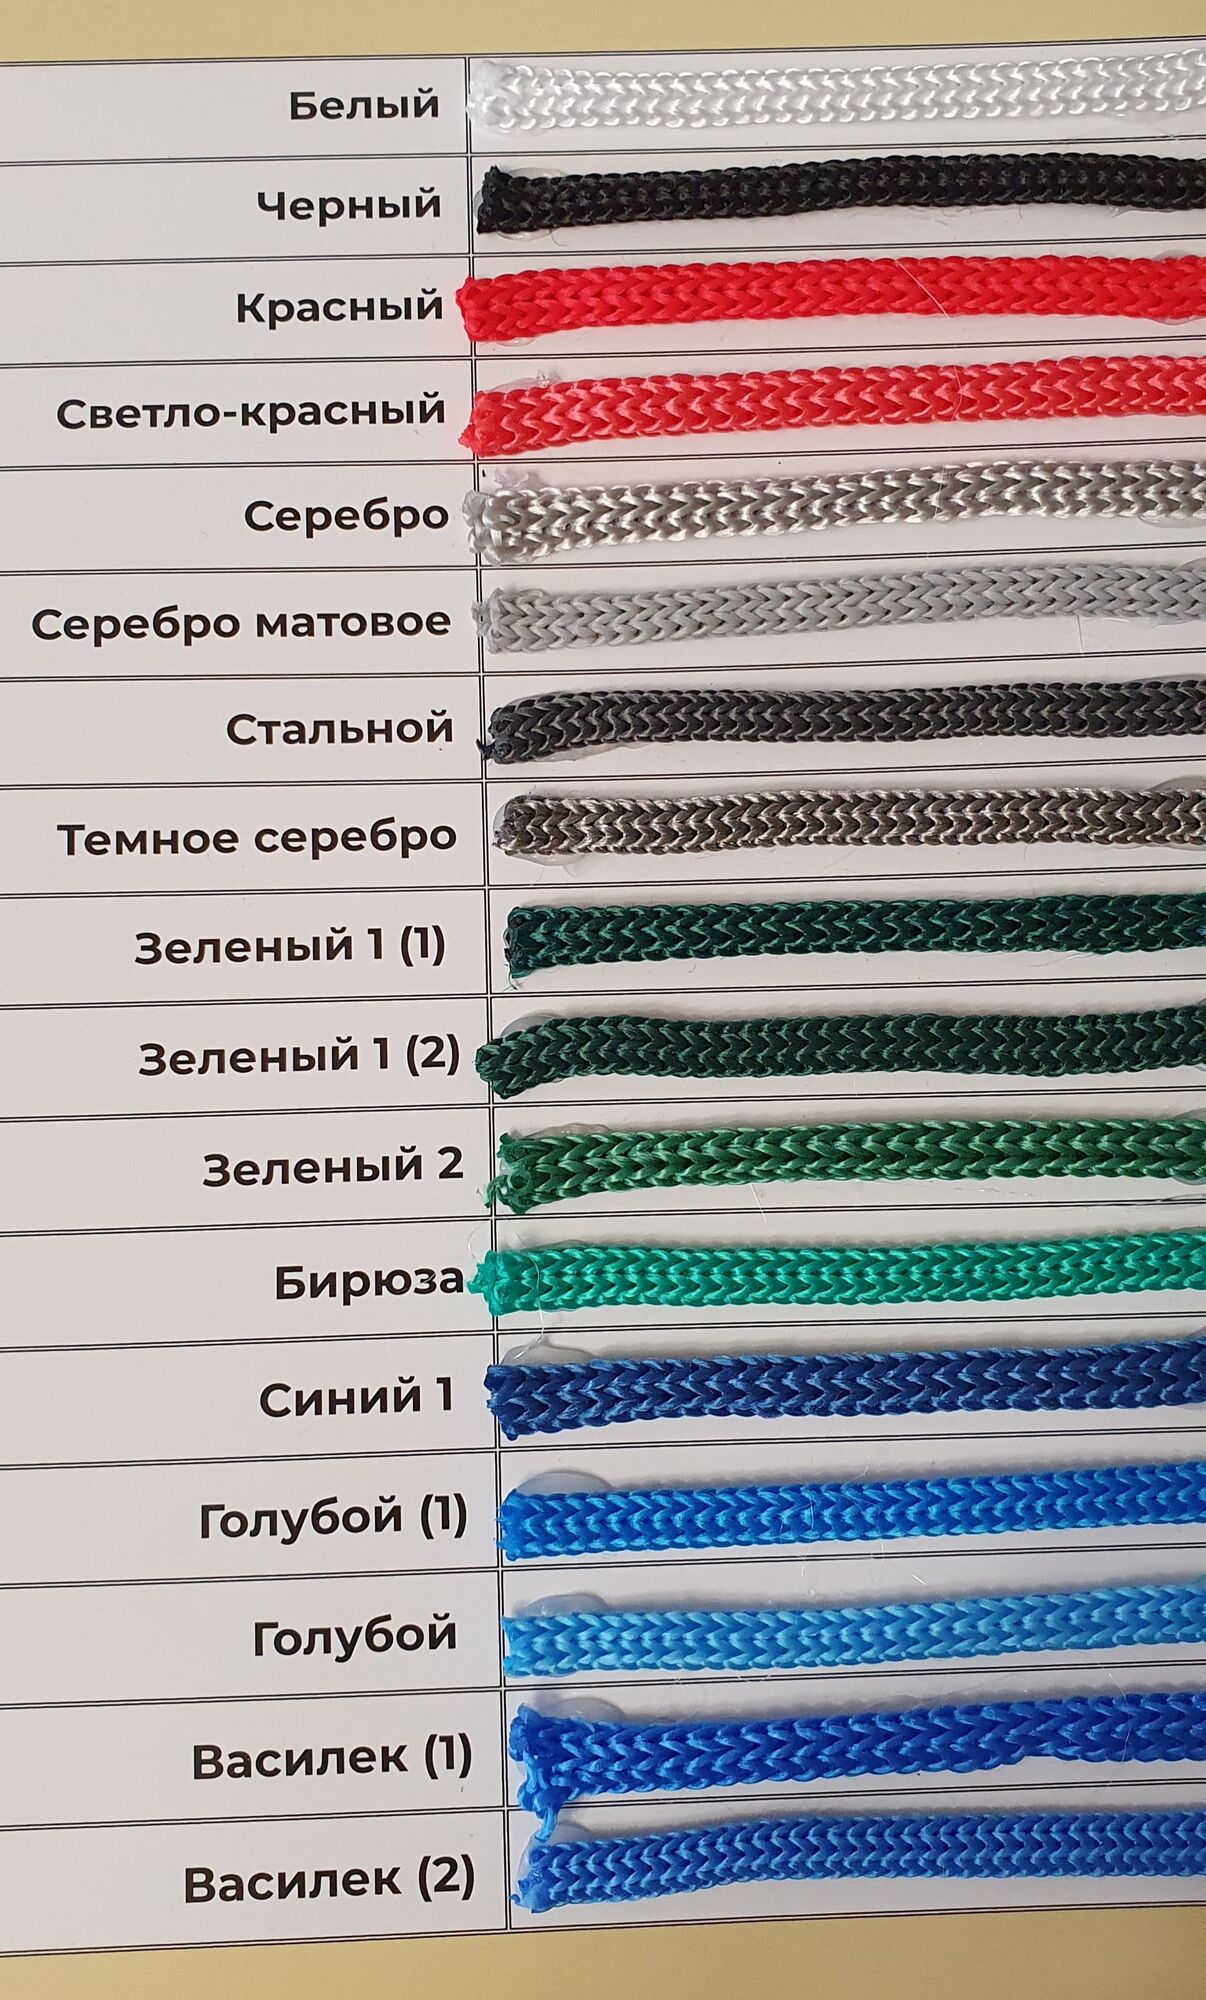 карта цветов полипропиленового шнура 3